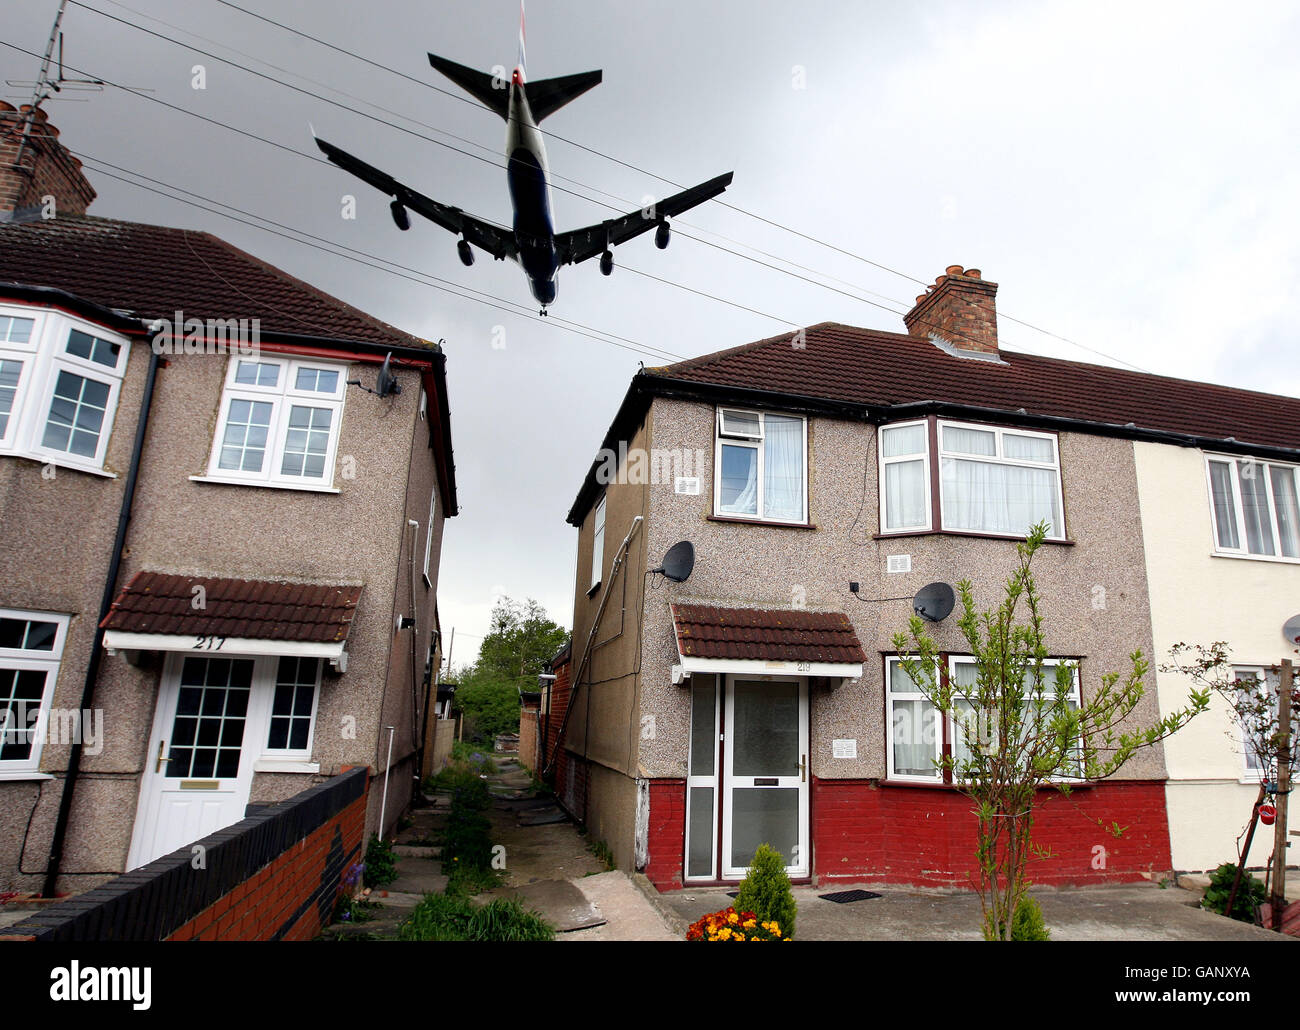 Una fotografia generica di un aereo che vola in basso su una proprietà immobiliare locale, sul suo approccio finale per atterrare sulla pista Nord all'aeroporto di Heathrow Foto Stock